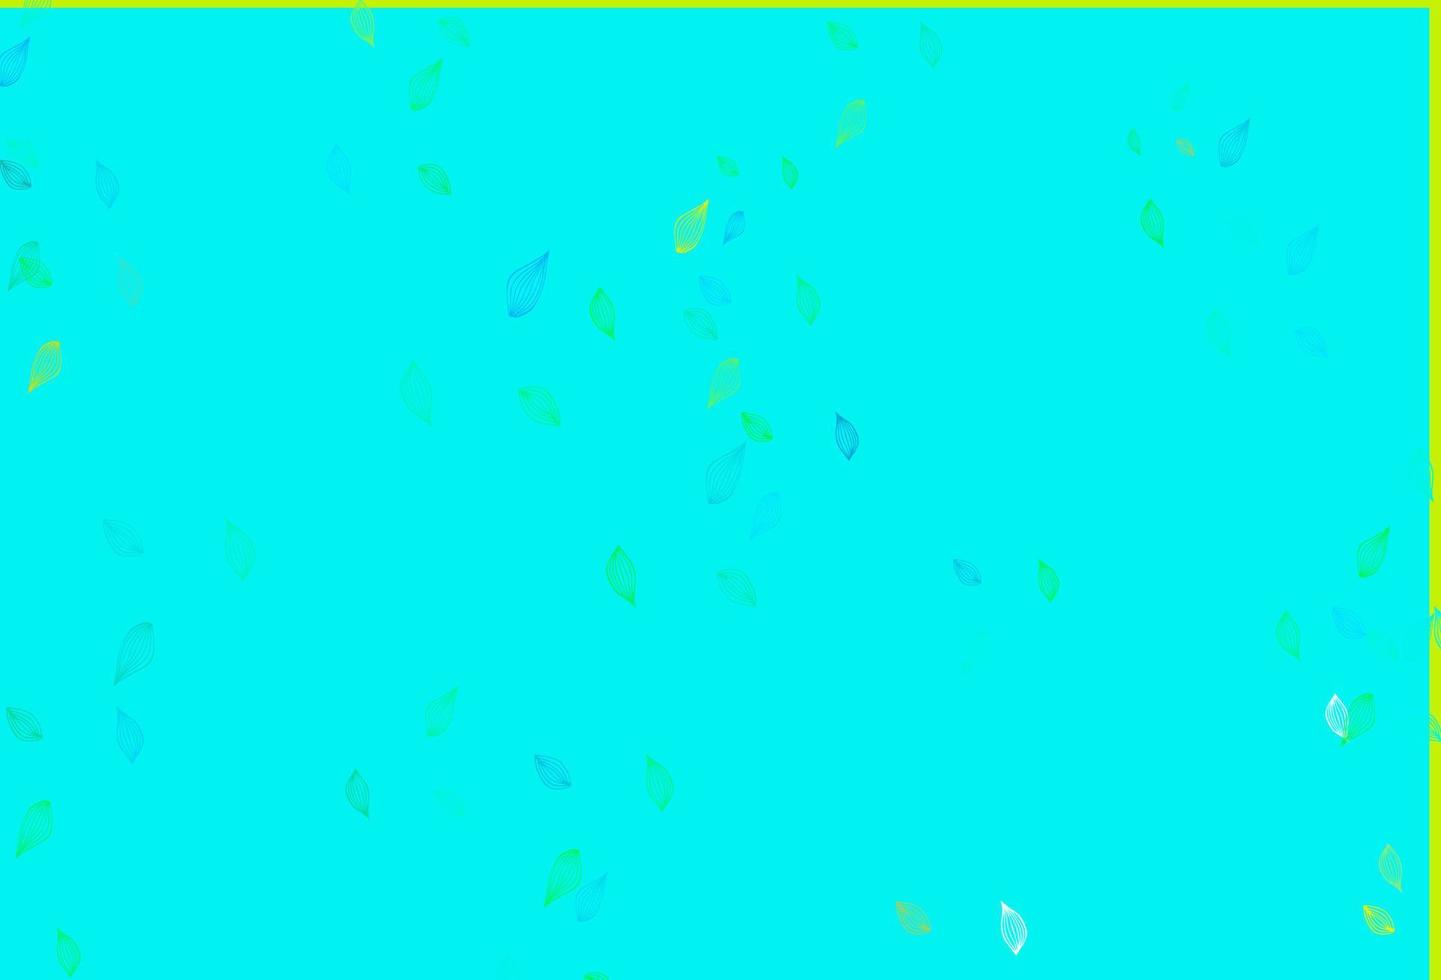 sfondo di doodle di vettore azzurro, giallo.